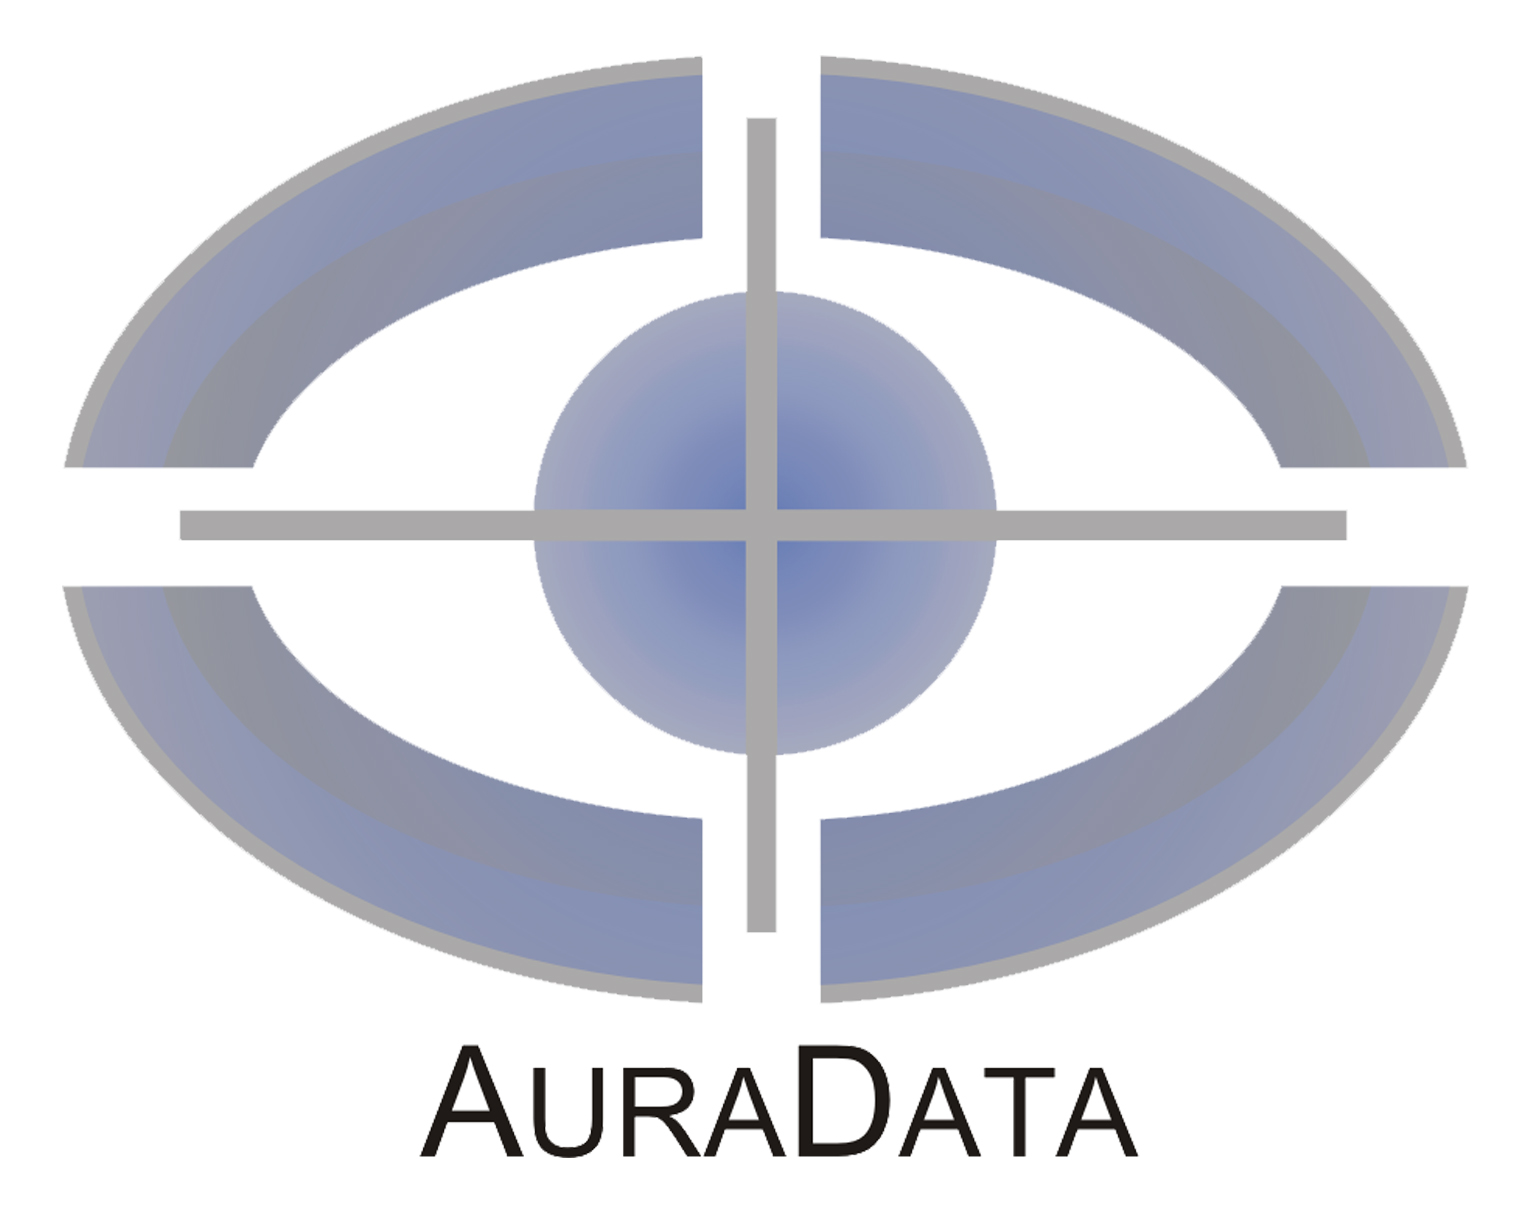 AuraData